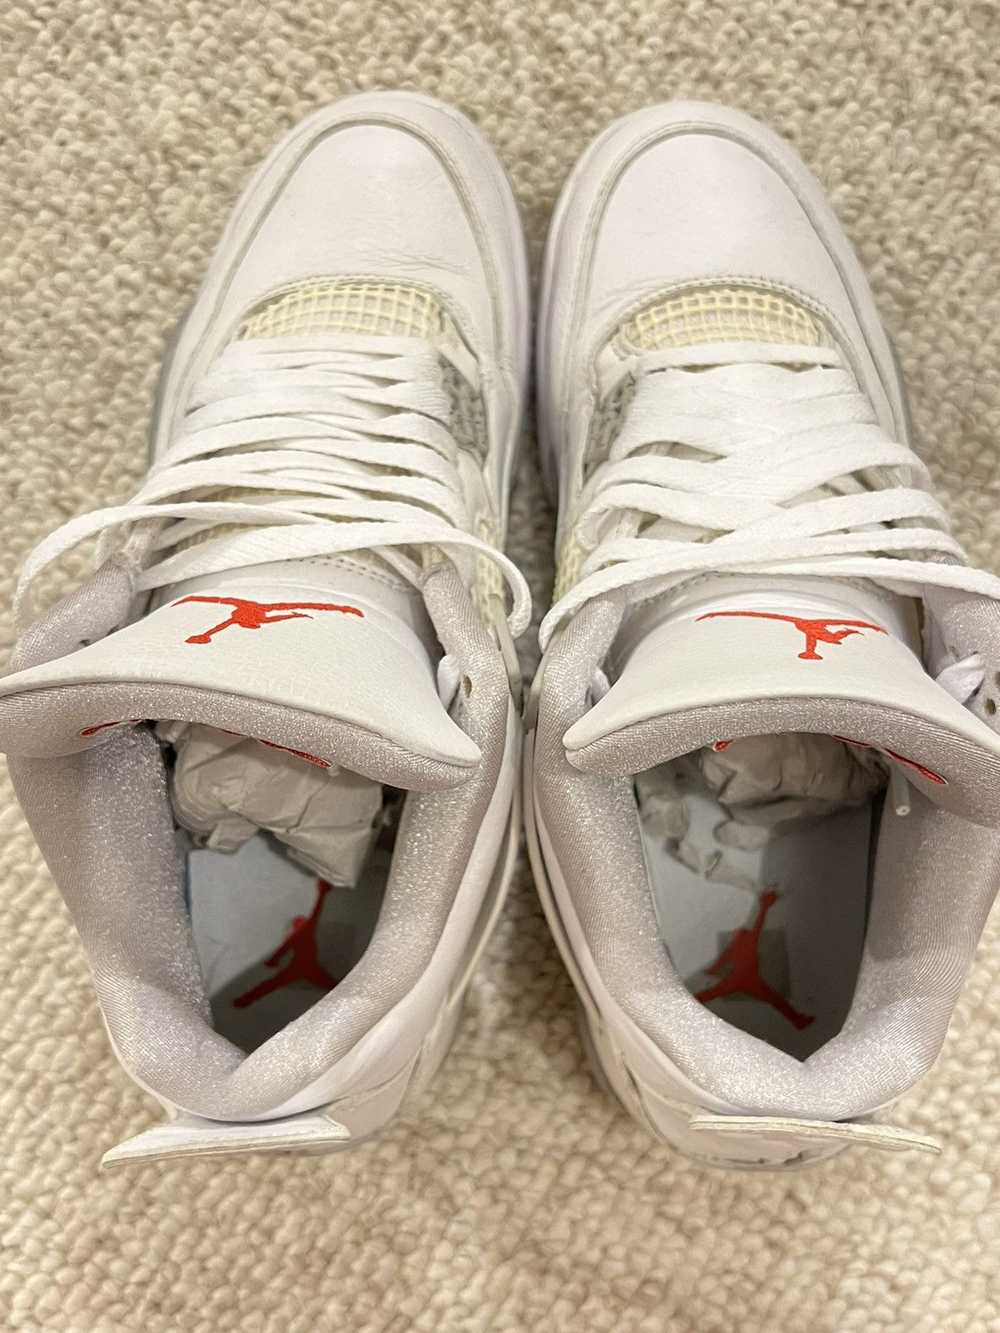 Jordan Brand × Nike Jordan 4 White Oreo - image 6